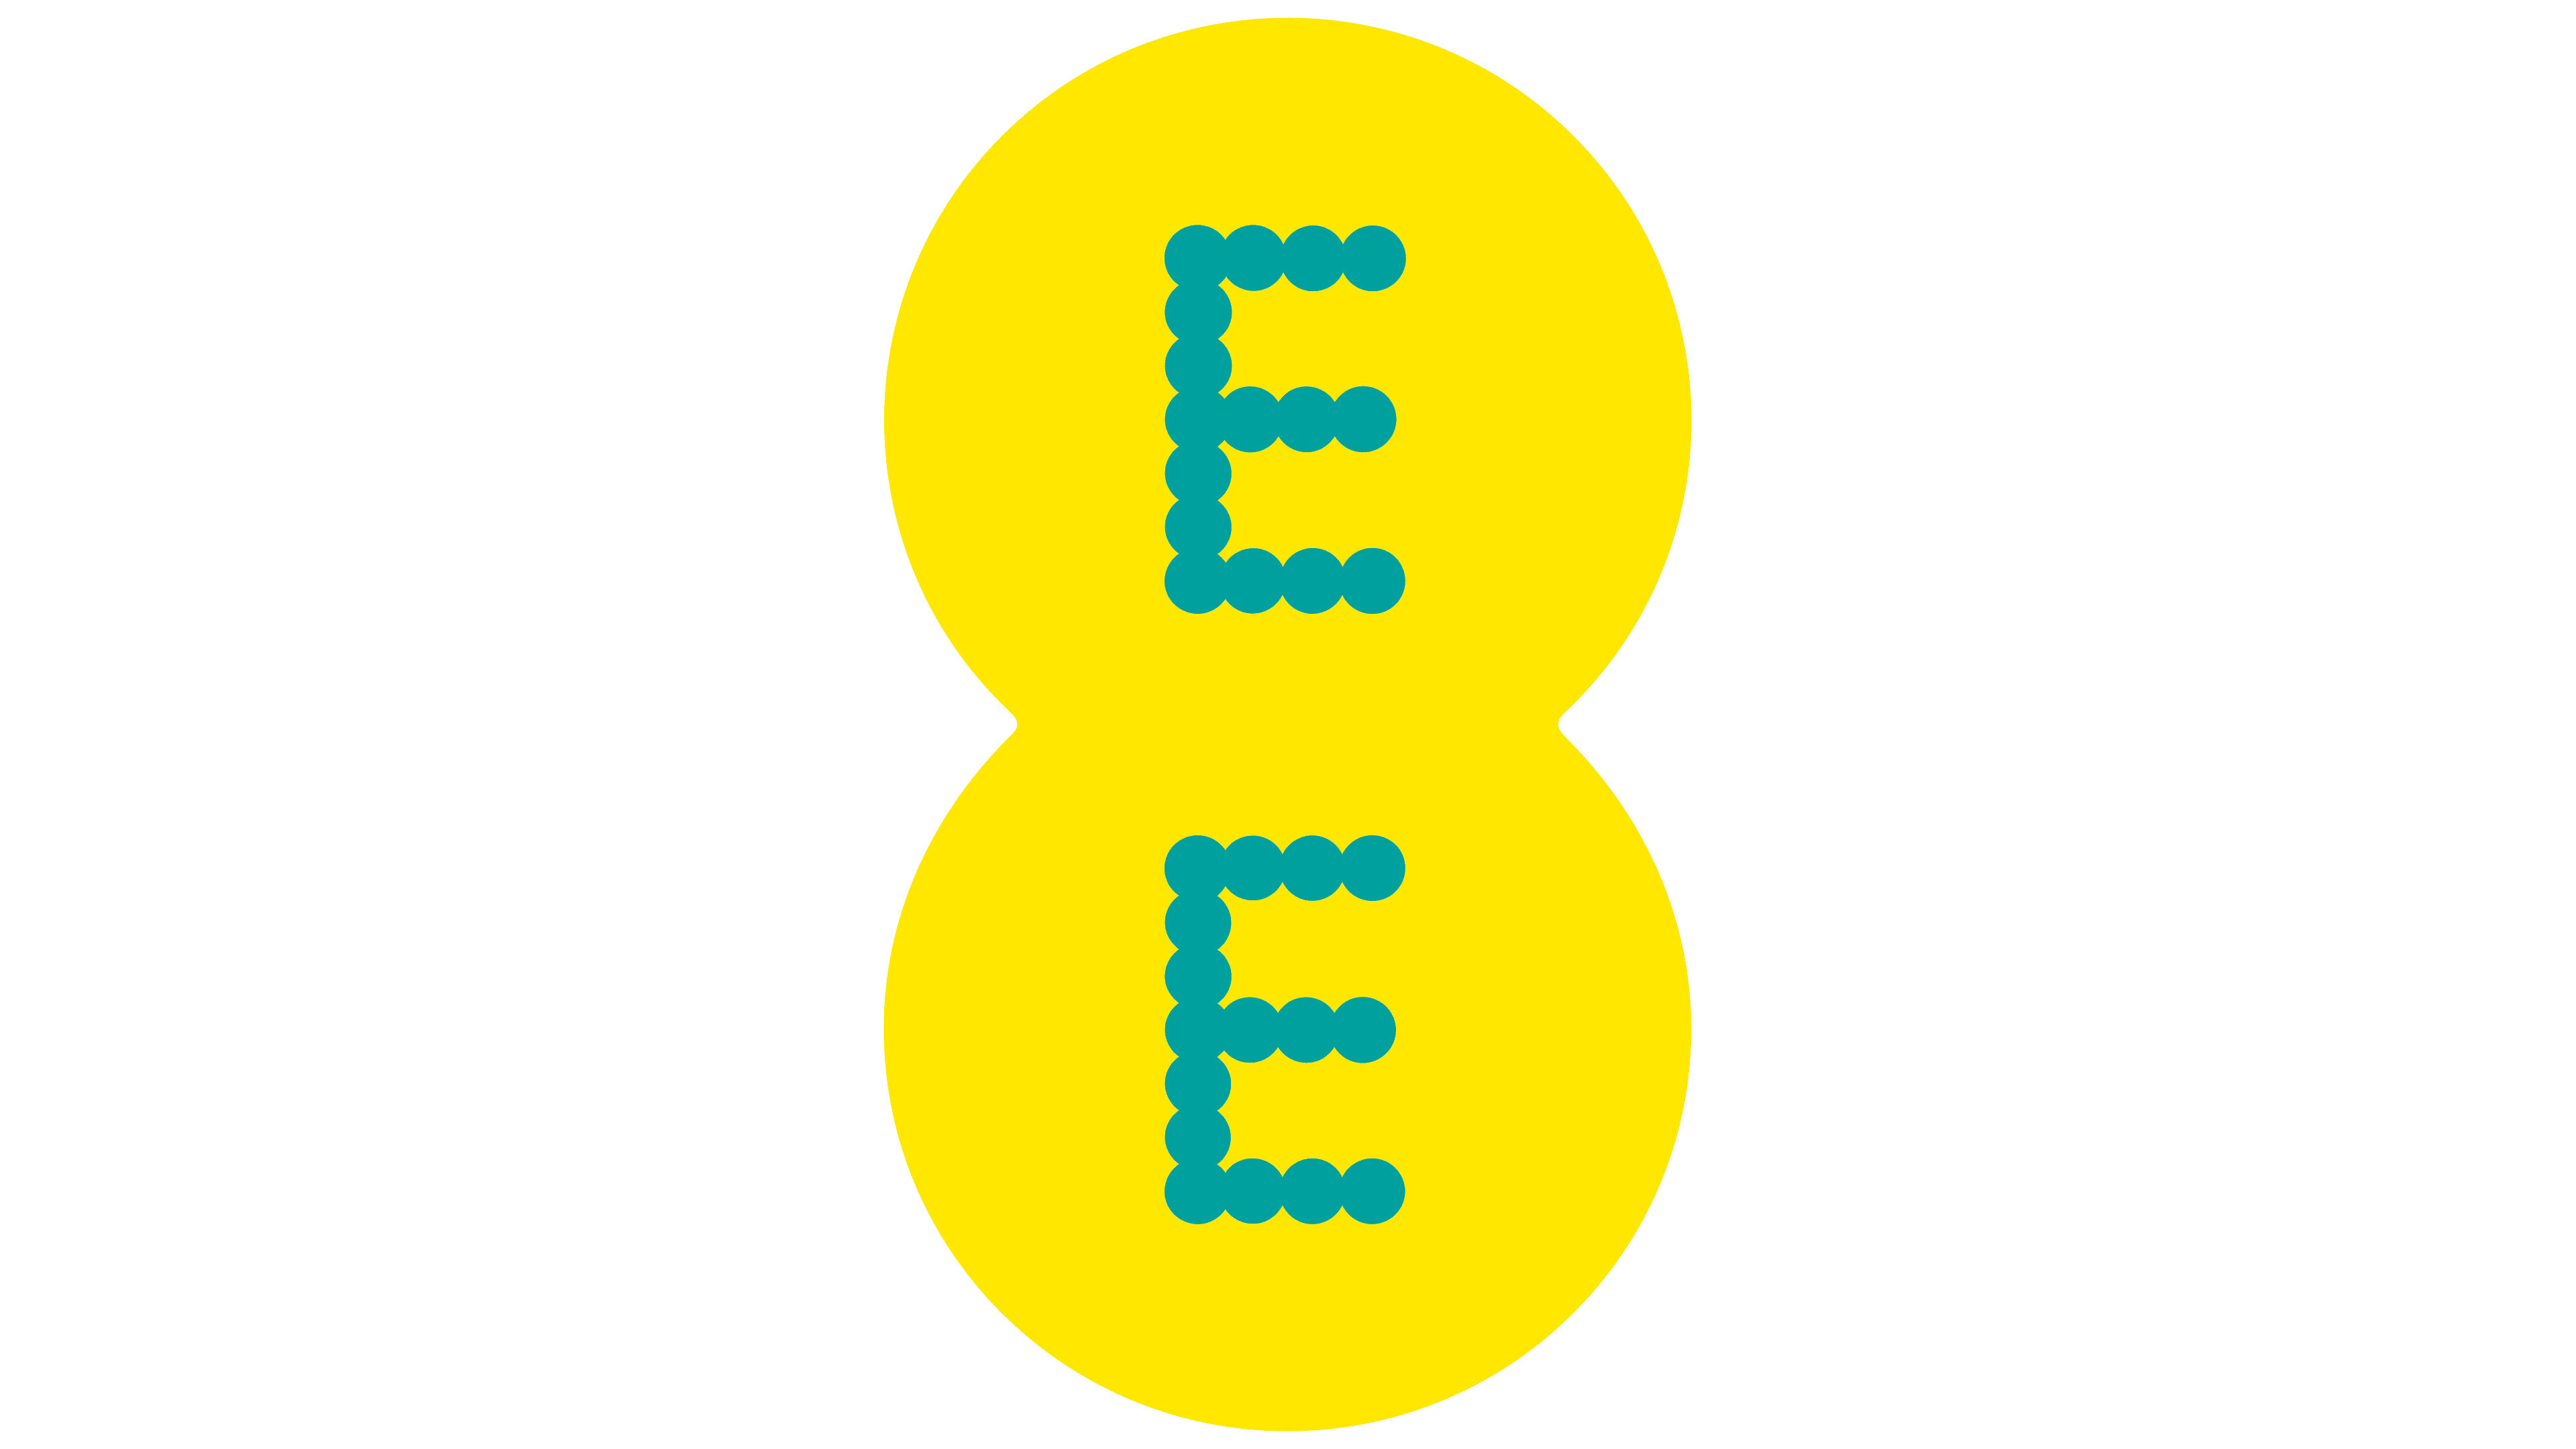 EE UK mobile network logo cutout